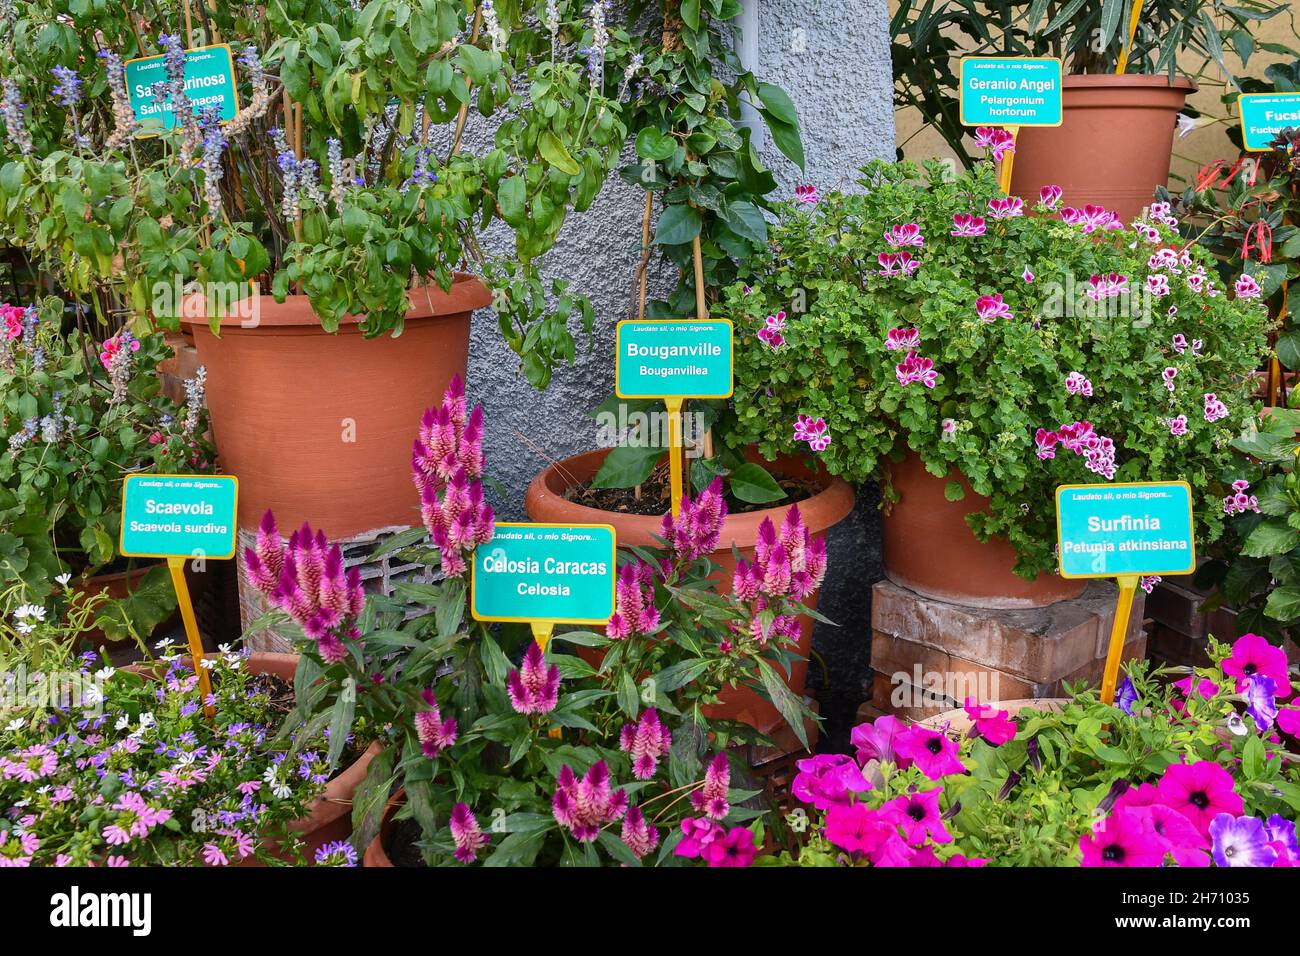 Detalle de un jardín botánico con plantas floridas en macetas y etiquetas que indican sus nombres y variedades, Alassio, Savona, Liguria, Italia Foto de stock